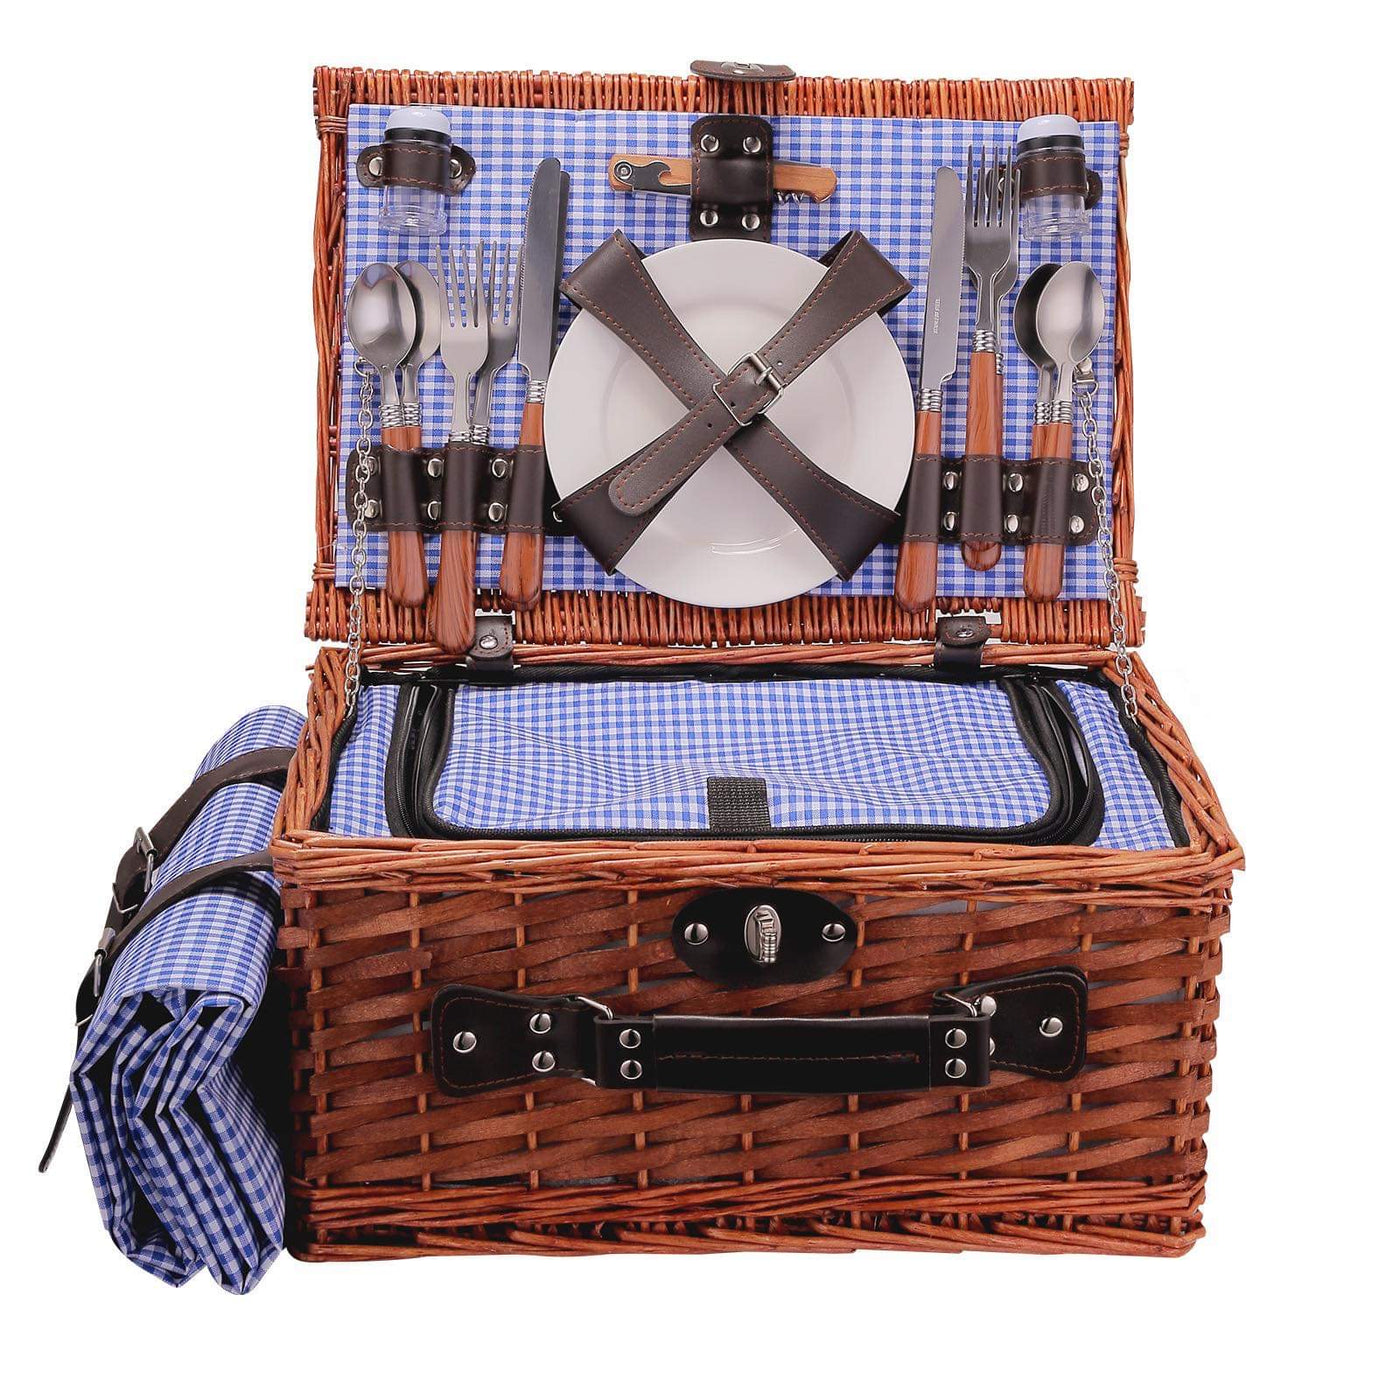 Willow Picnic basket set